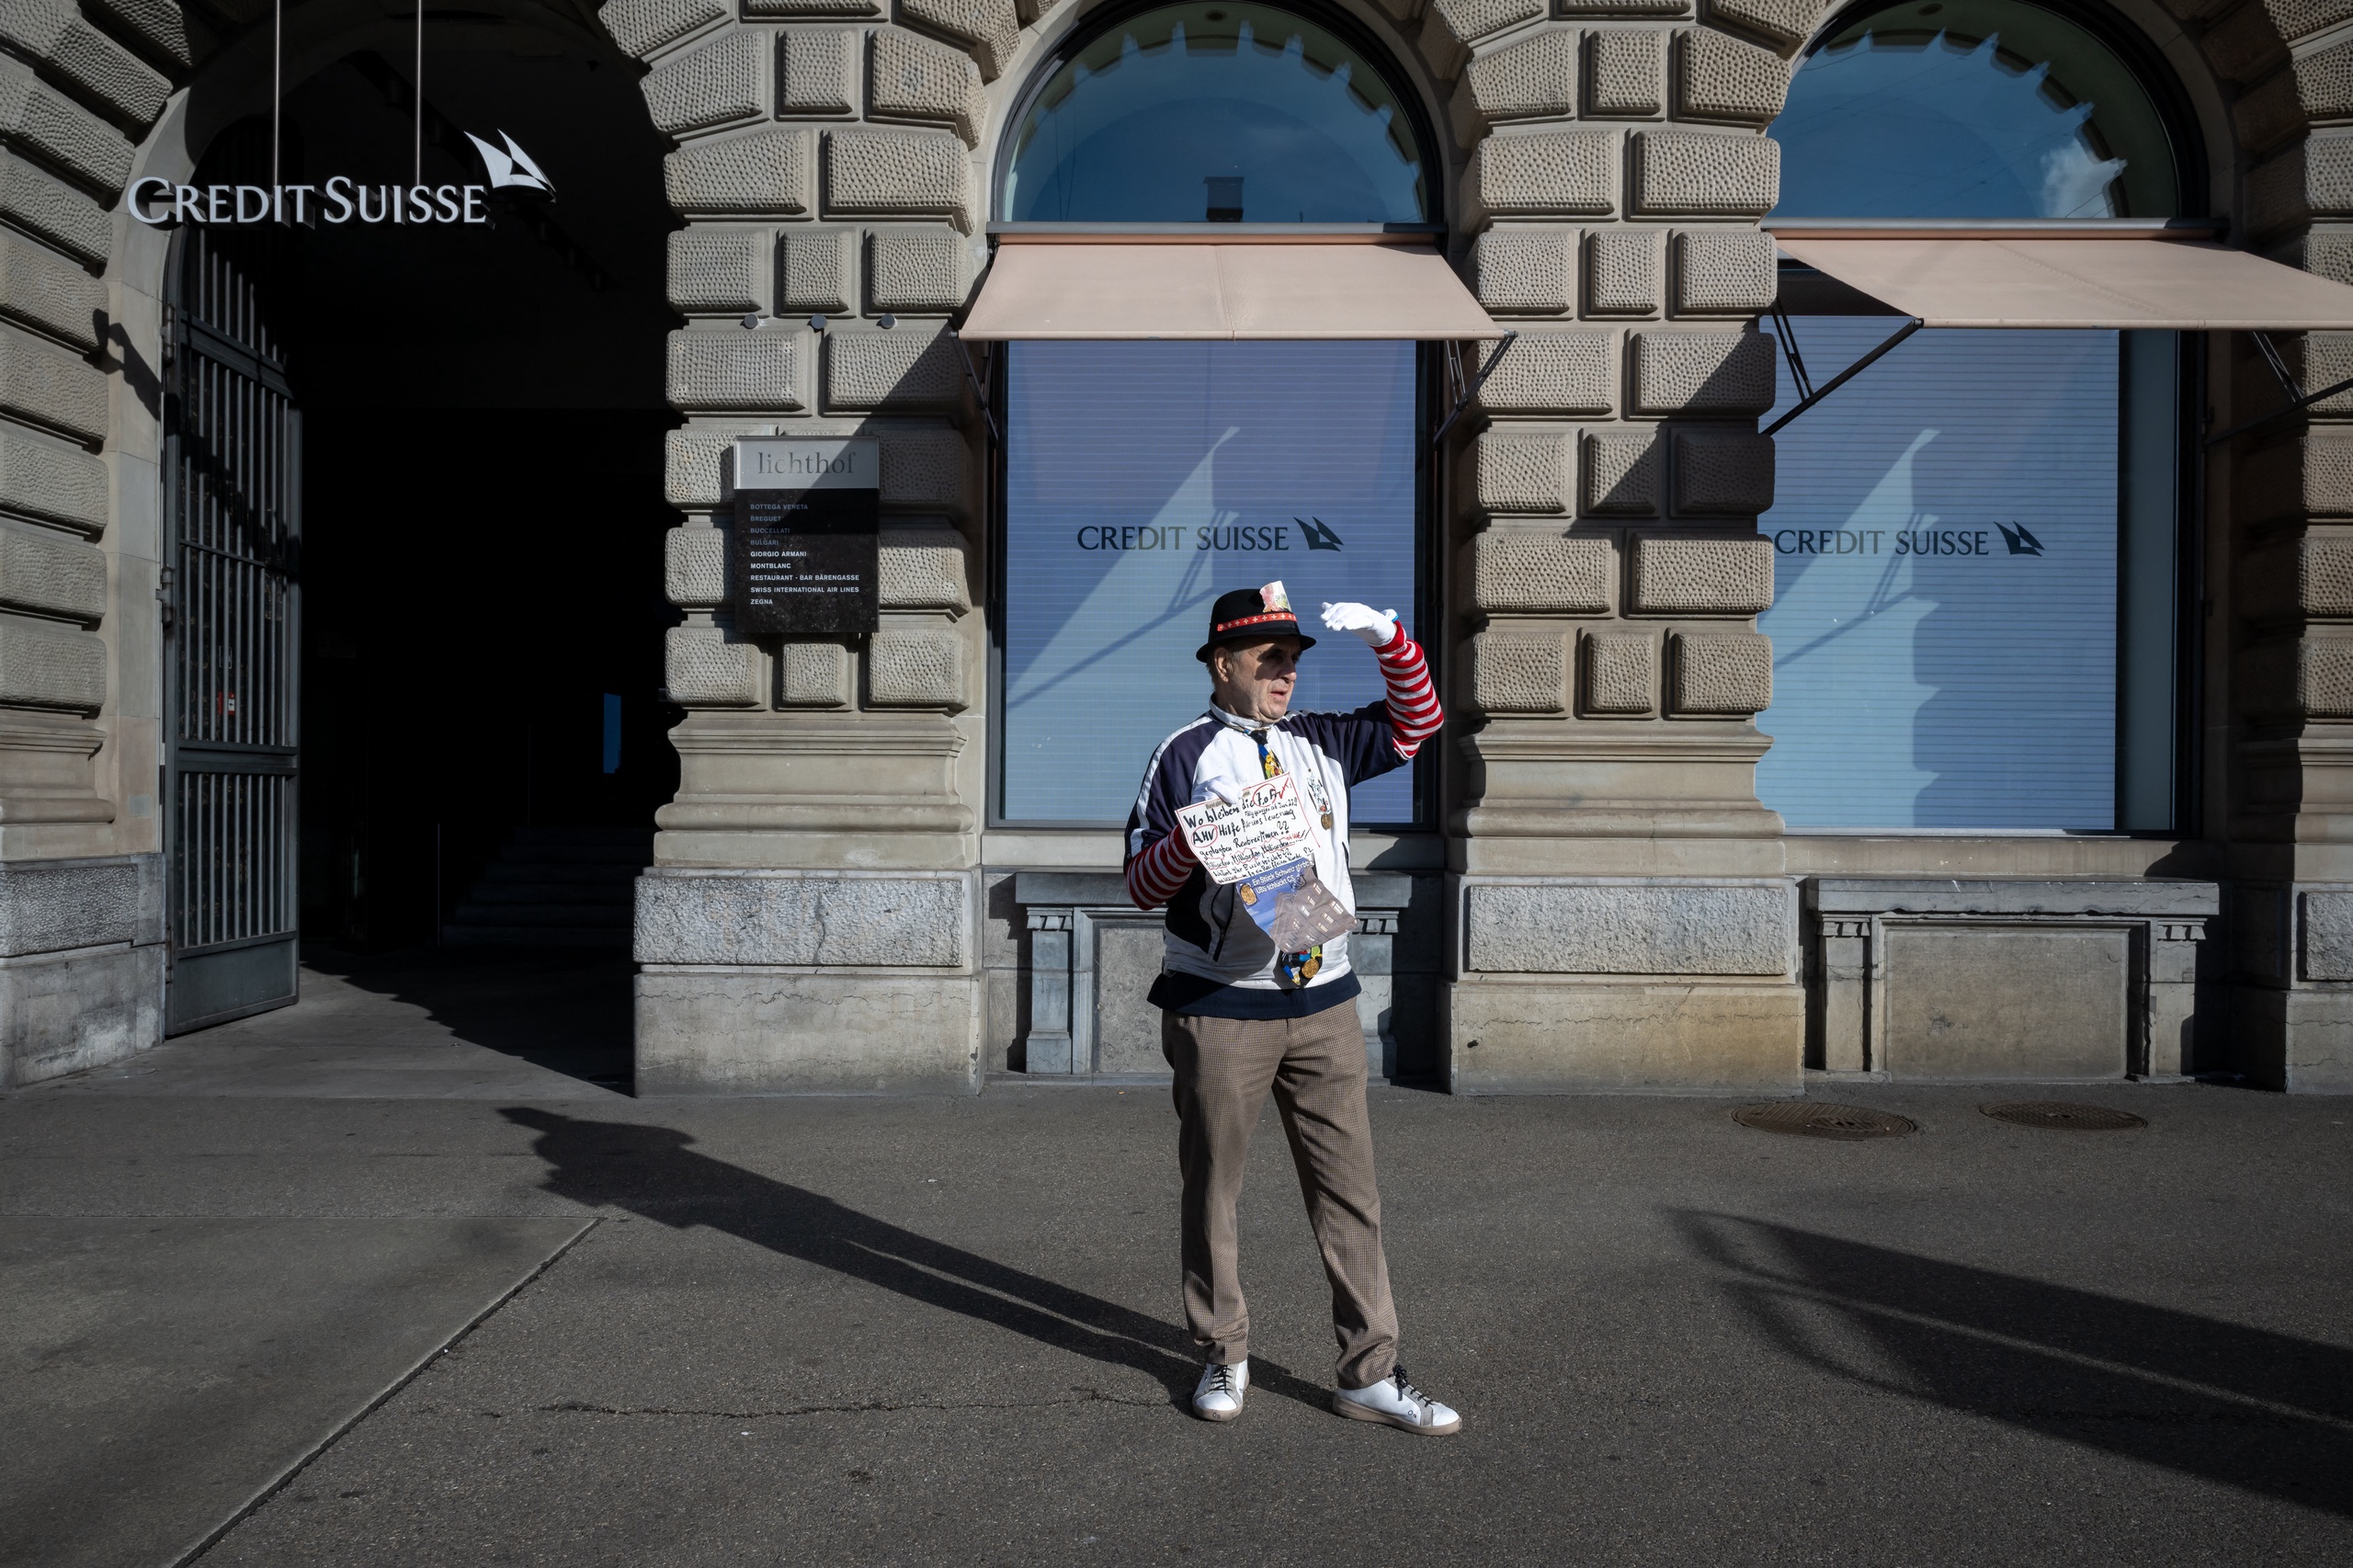 De Zwitserse financiële toezichthouder Finma overweegt een procedure te starten tegen de managers van Credit Suisse. Vorige week werd de op een na grootste bank van Zwitserland gered door concurrent UBS. Dat meldt persbureau Reuters op zondag.